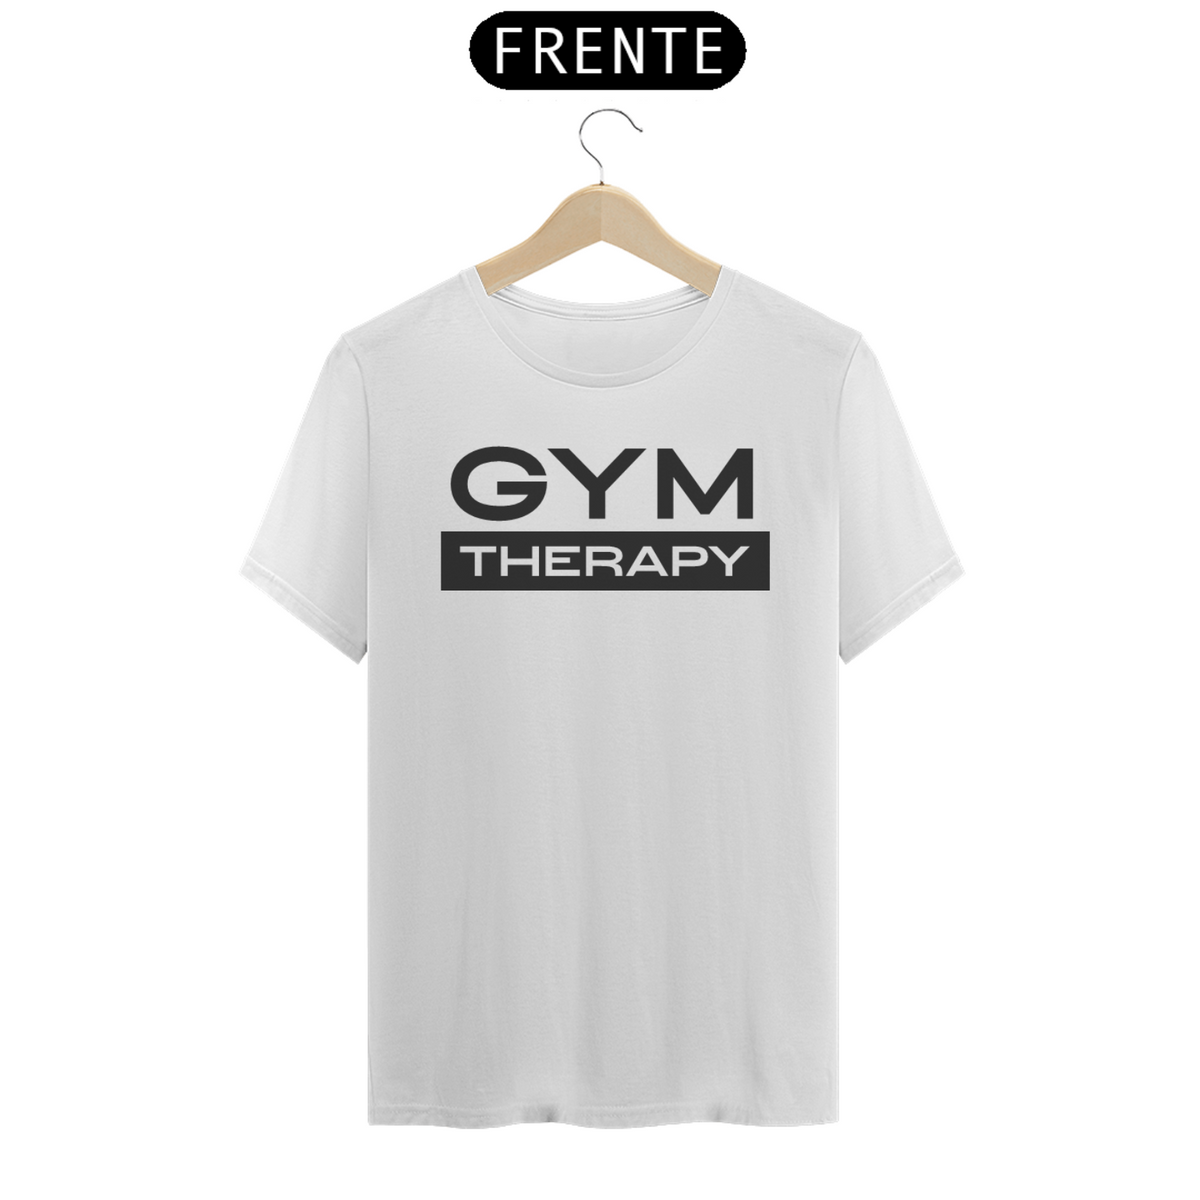 Nome do produto: Gym Therapy